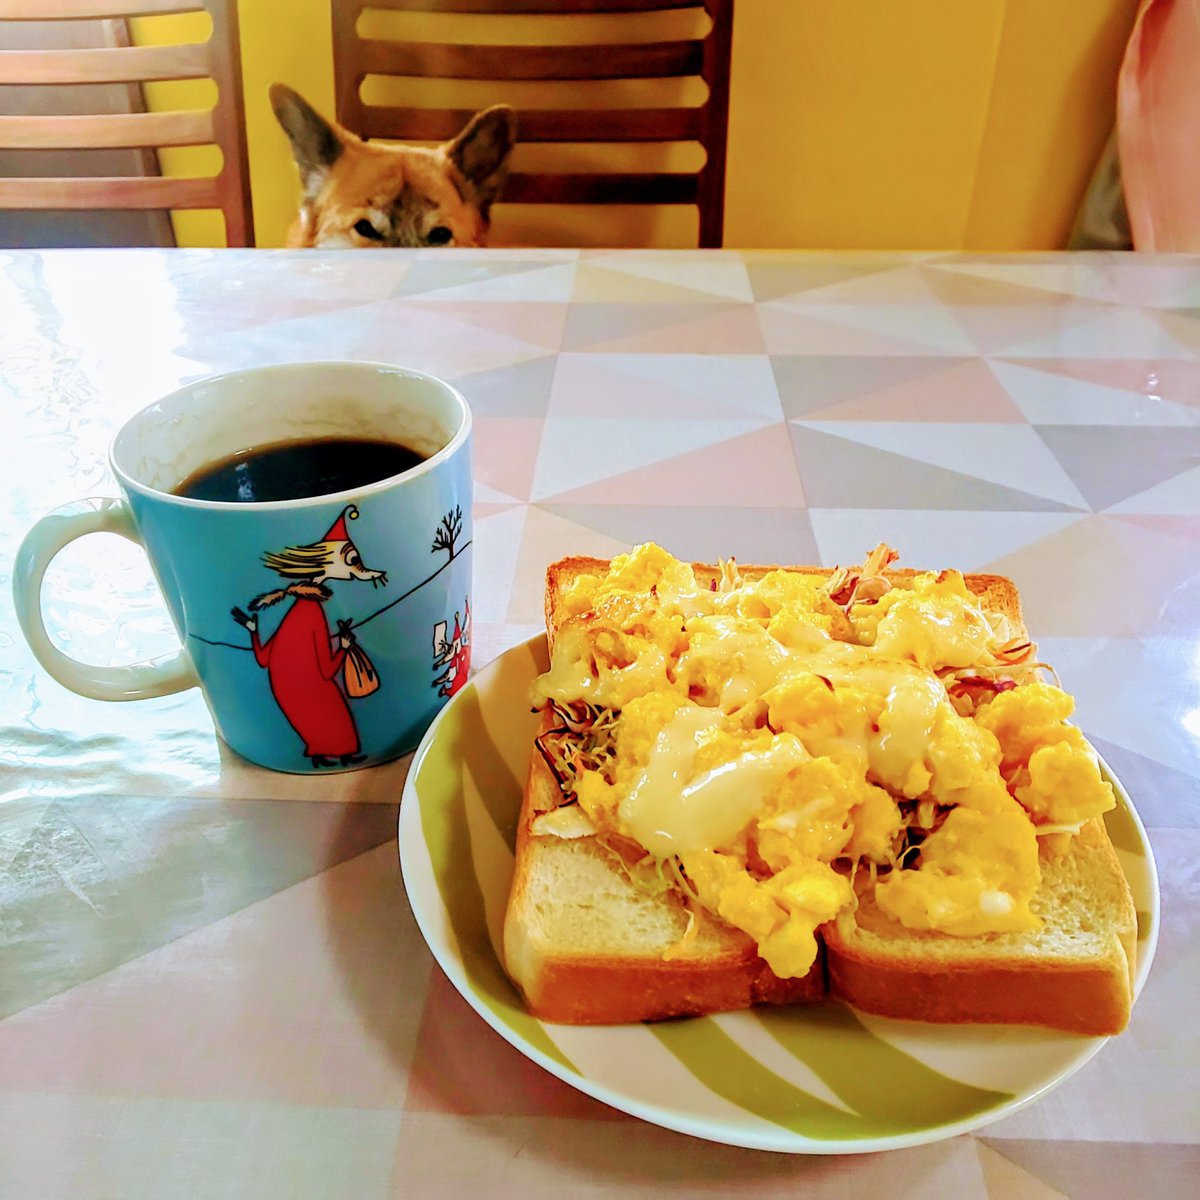 今日の朝食風景。眠たそうなチョコ🐶にジーッと覗かれながらスクランブルエッグトーストを食べました。